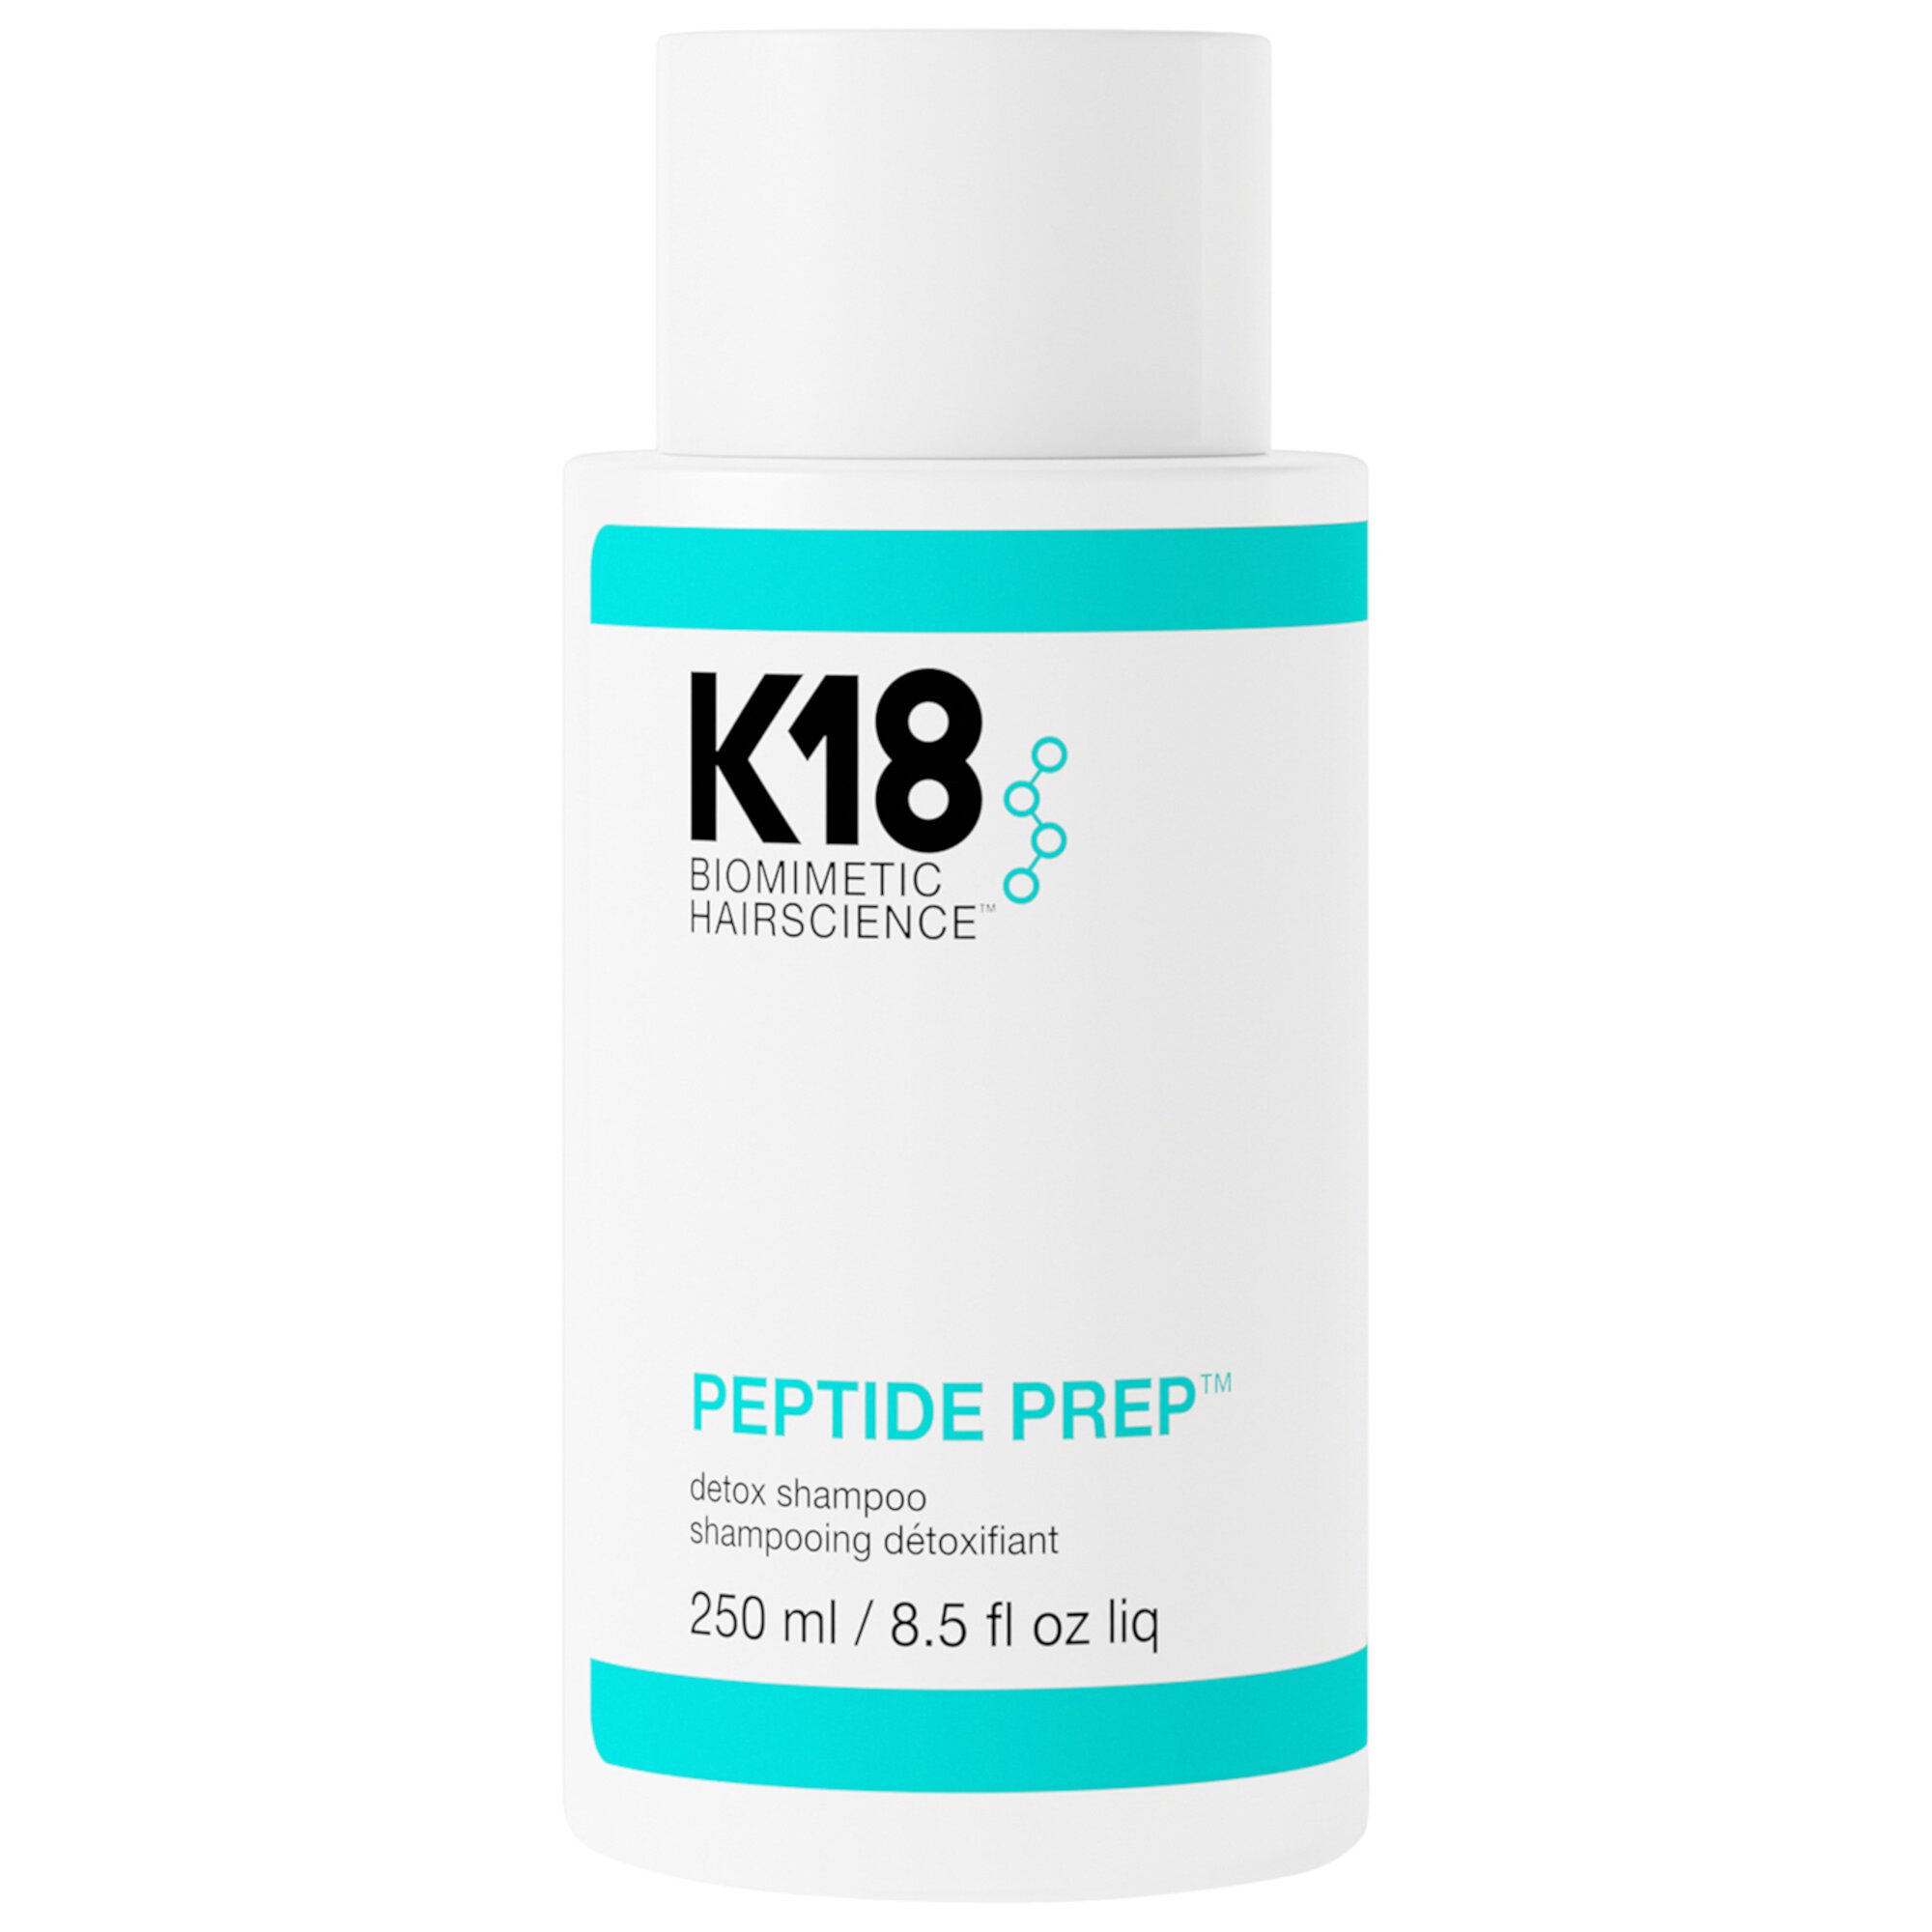 PEPTIDE PREP™ Осветляющий детокс-шампунь K18 Biomimetic Hairscience